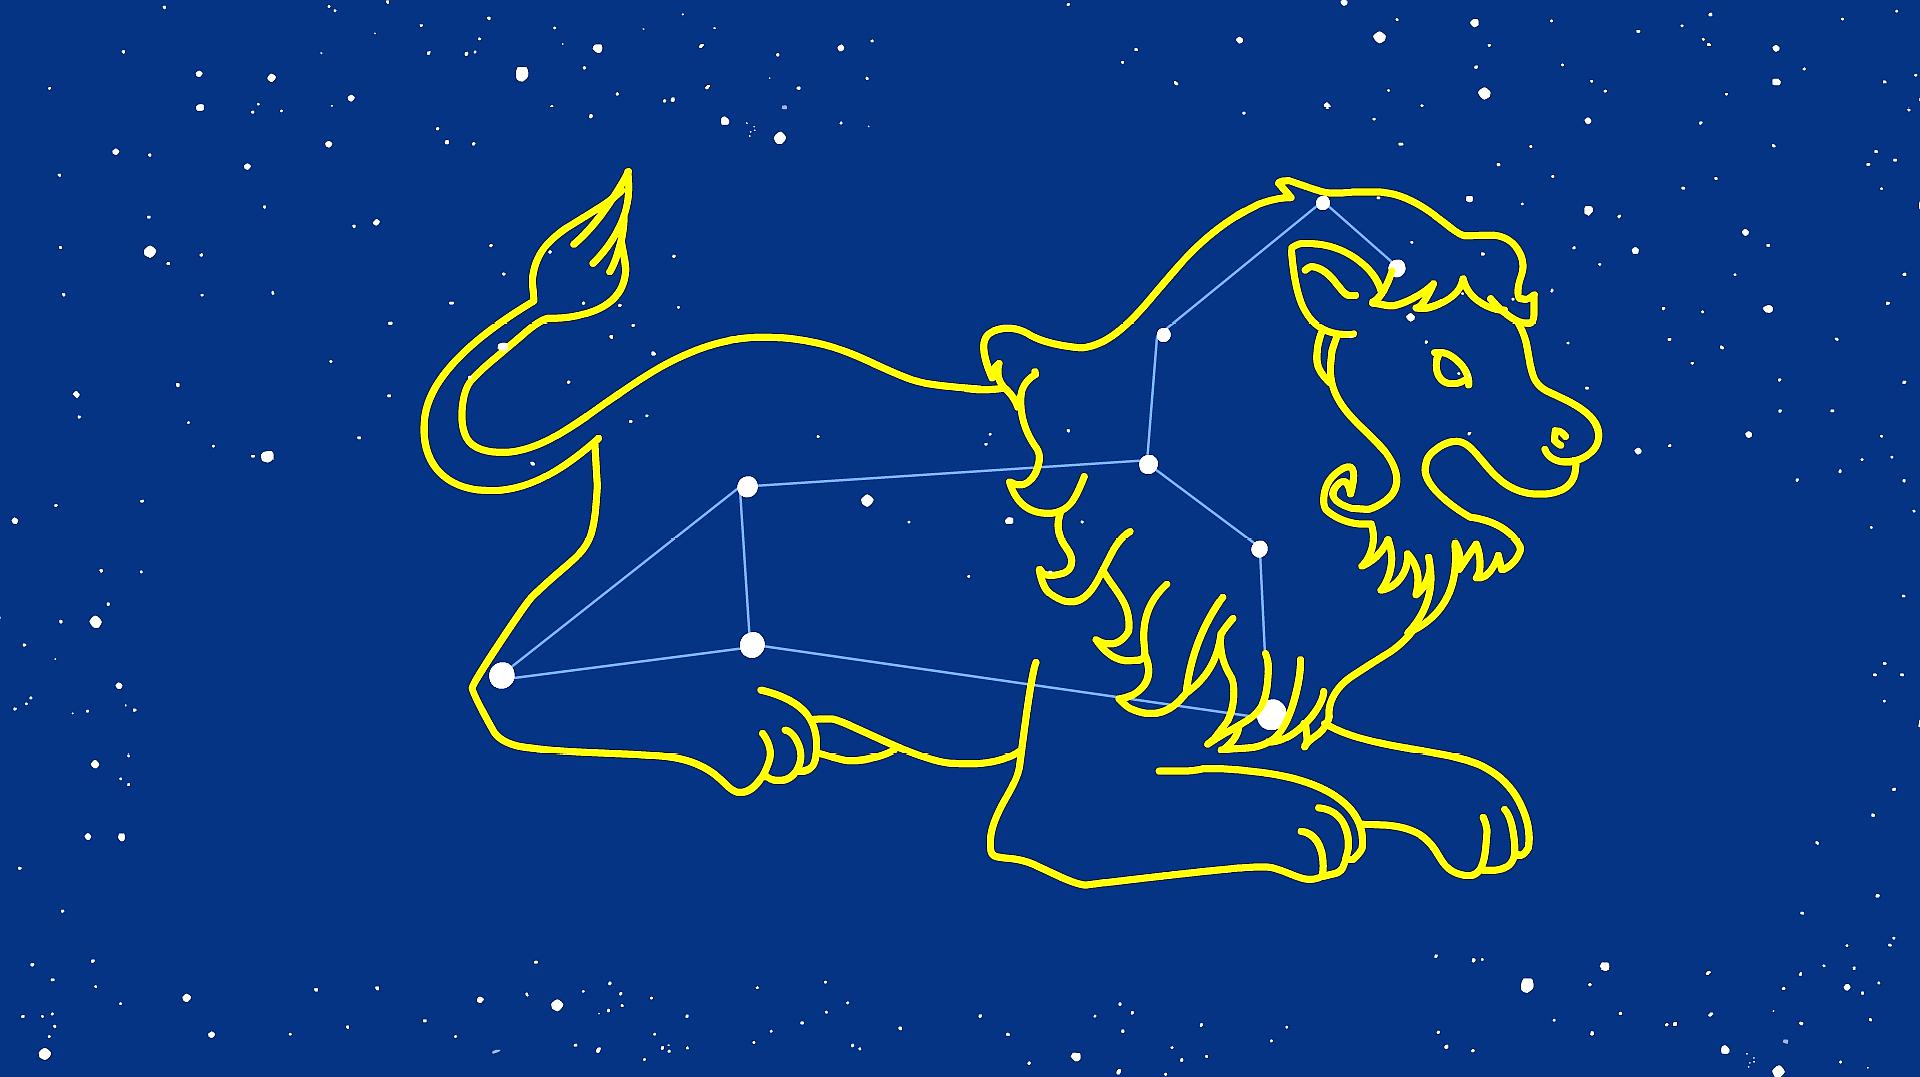 同学们,狮子座是黄道十二星座之一,你知道它在星空中的位置吗?